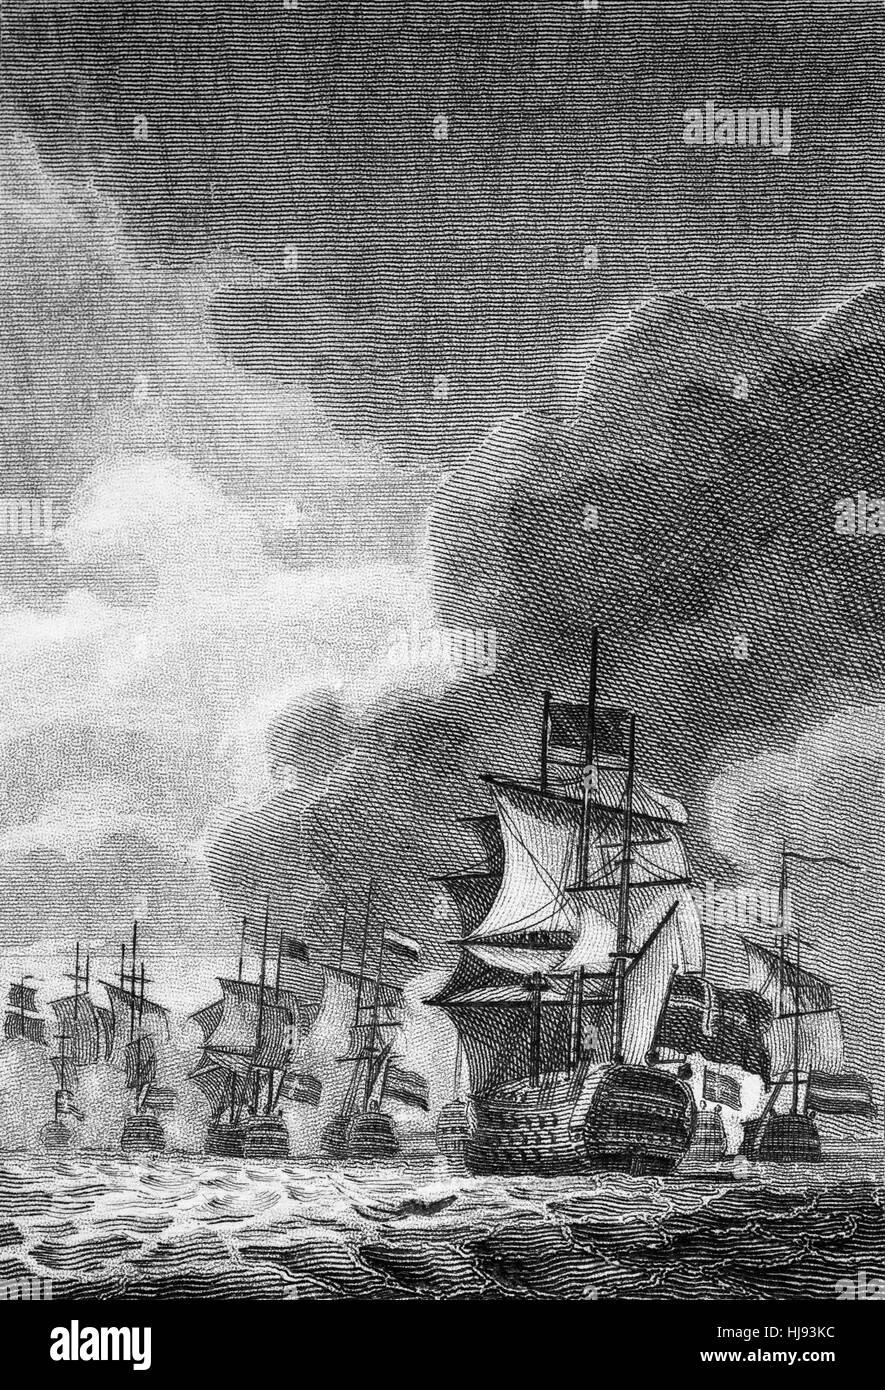 Sir Edward Spragge aka ou la Fayette, Sprague (vers 1620 - 1673) était un amiral de la Marine royale. Il était un marin accompli brillamment Fiery, qui ont combattu dans de nombreuses grandes batailles après la restauration du roi Charles II en 1660, y compris une défaite des Néerlandais en 1672, au cours de la Troisième guerre anglo-hollandaise dans laquelle Spragge était commandant de l'Escadron rouge sur "La London' dans la bataille de Solebay en 1672. Banque D'Images